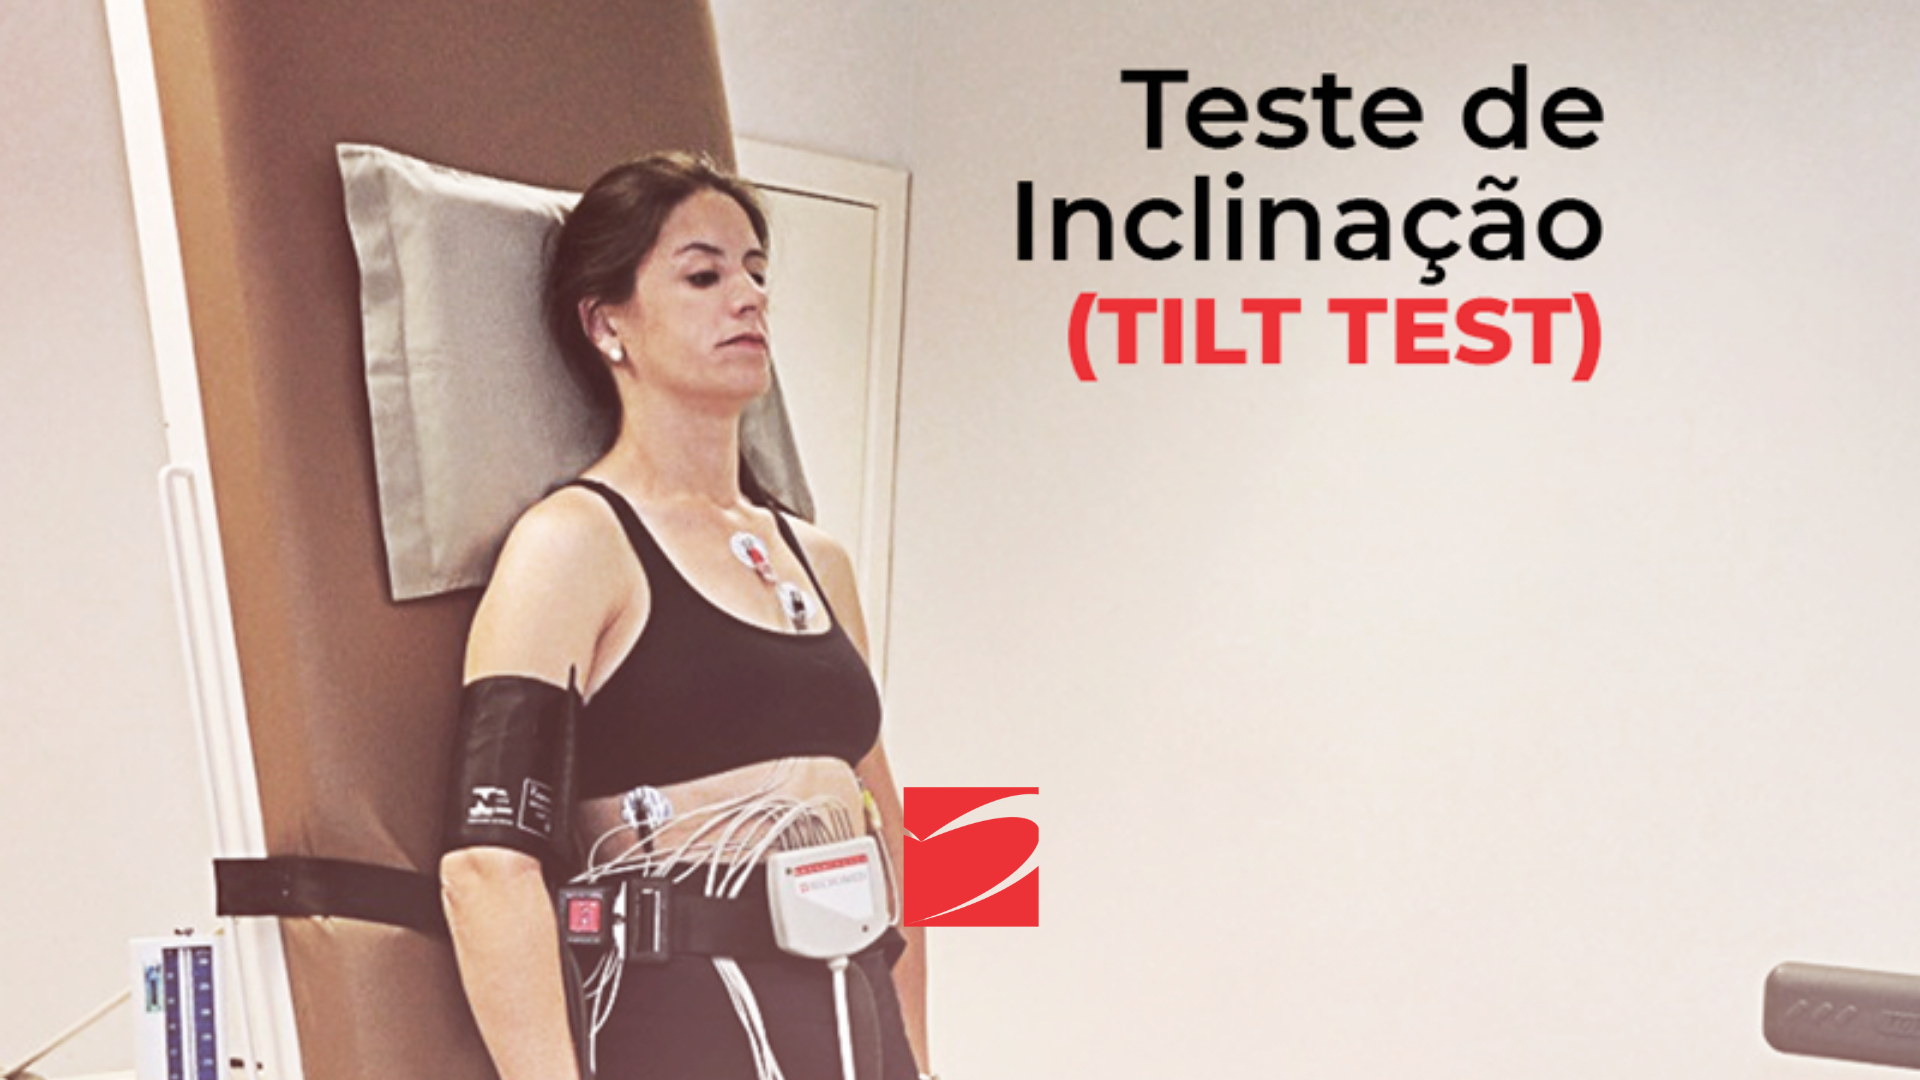 Tilt test: o que é, para que serve, como é feito e resultados - Tua Saúde